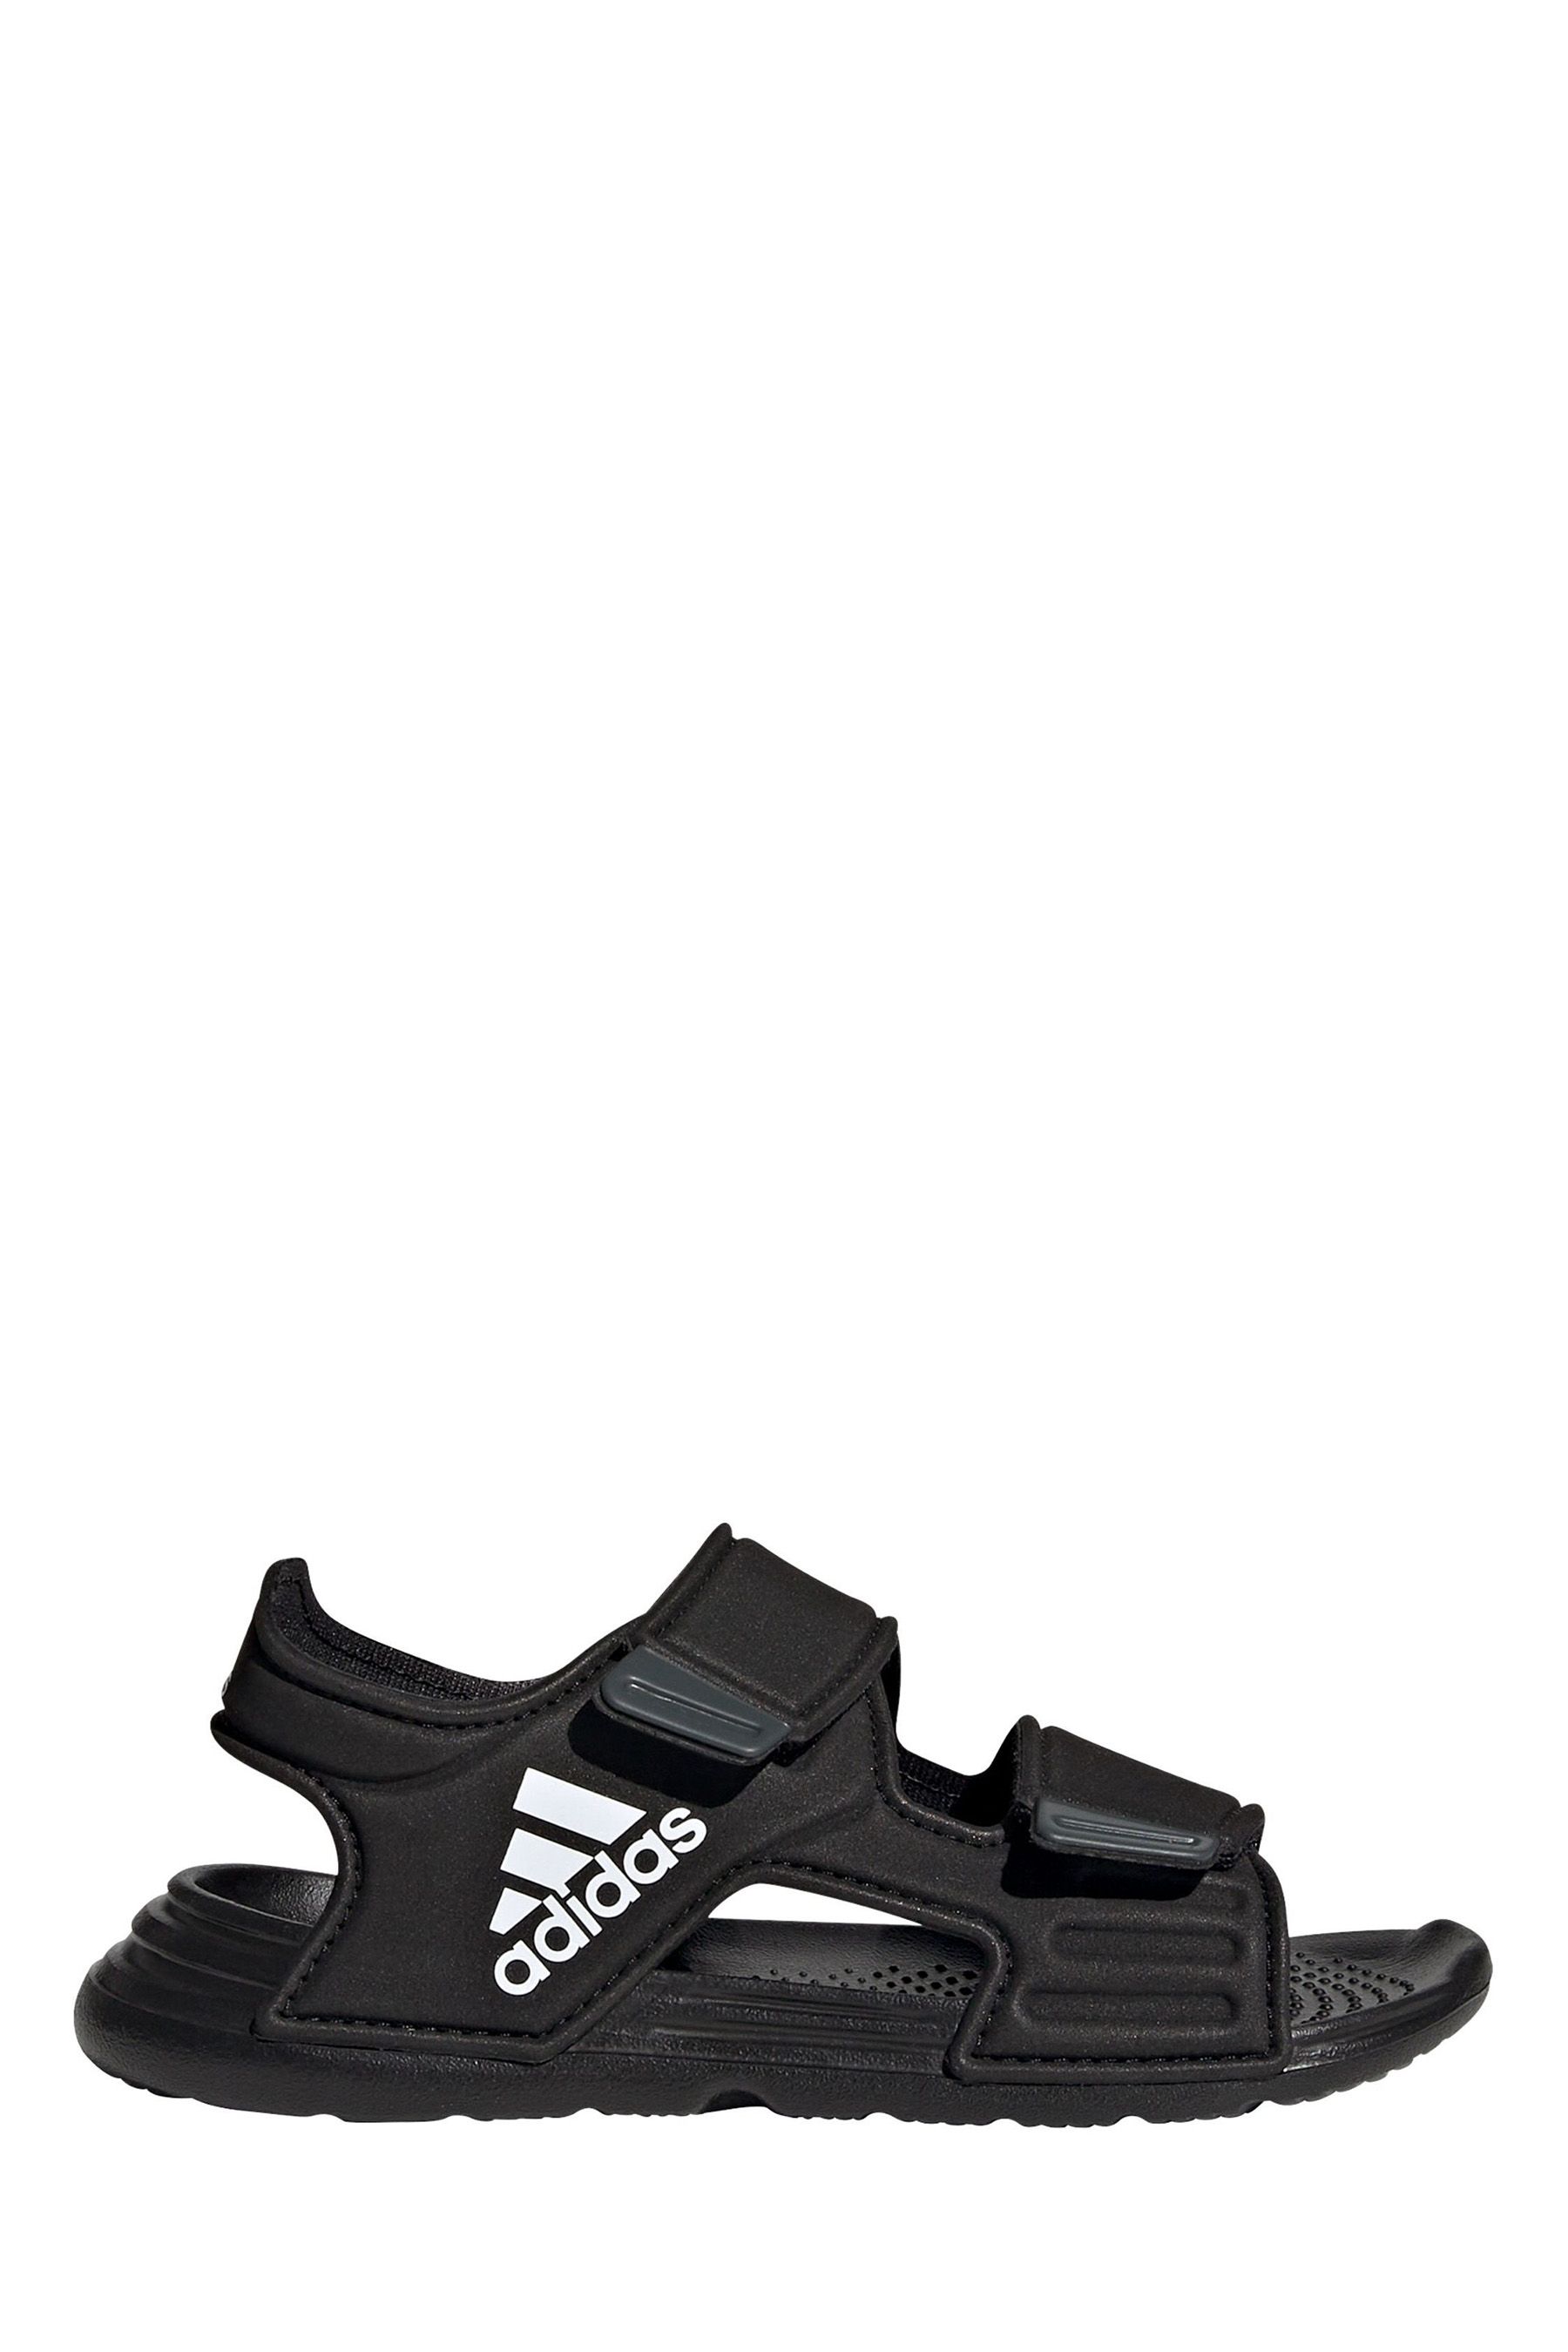 Сандалии adidas для юниоров Altaswim adidas, черный